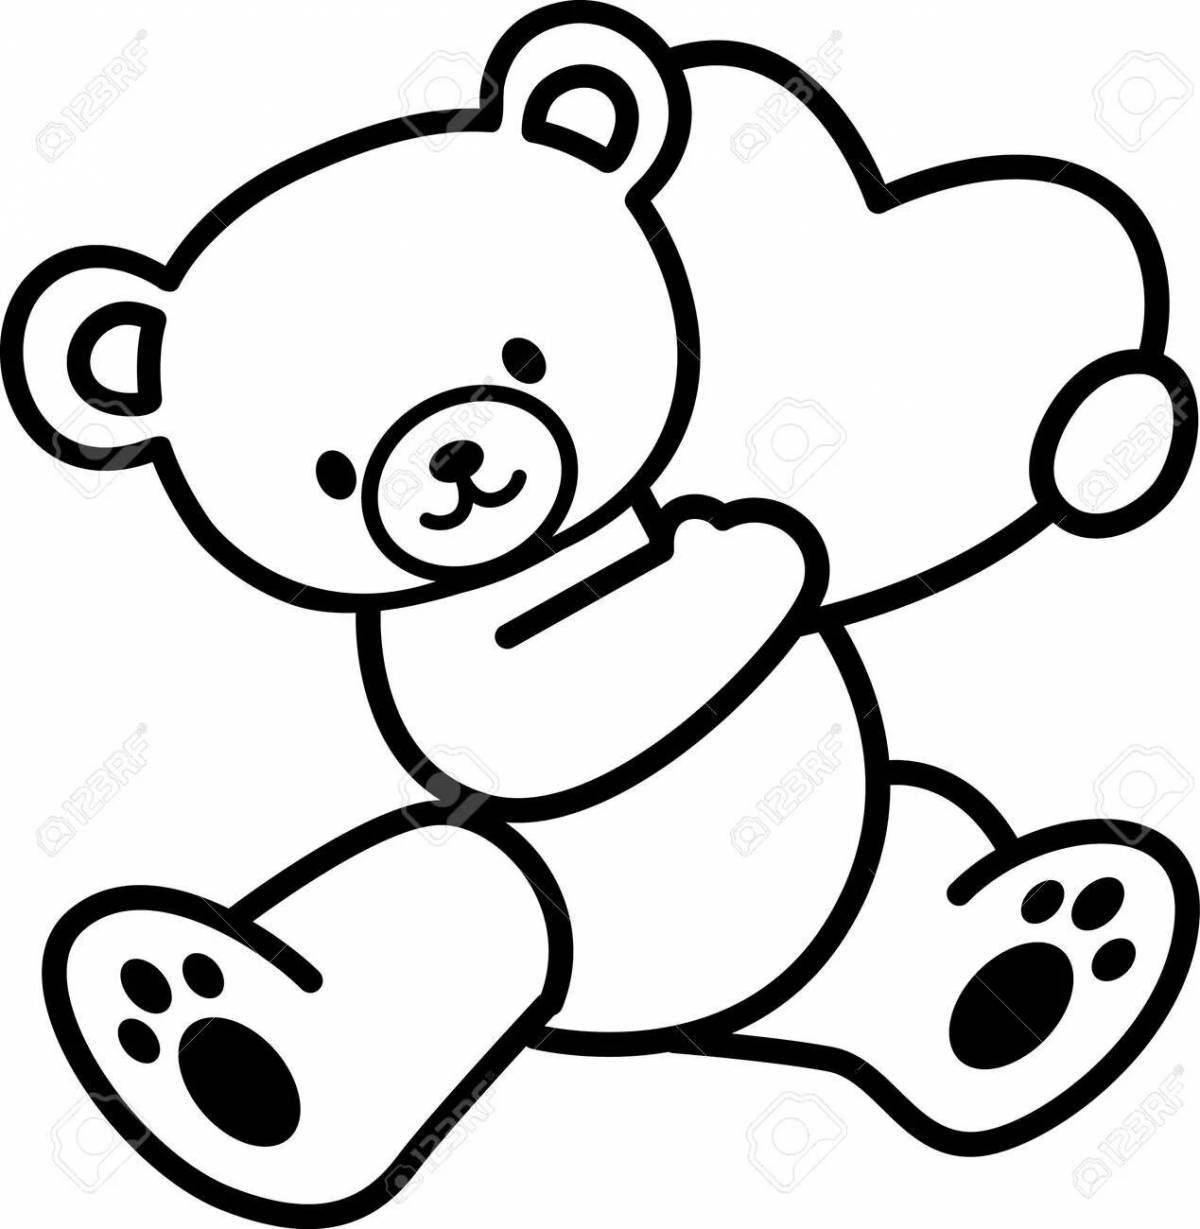 Joyful teddy bear valera coloring